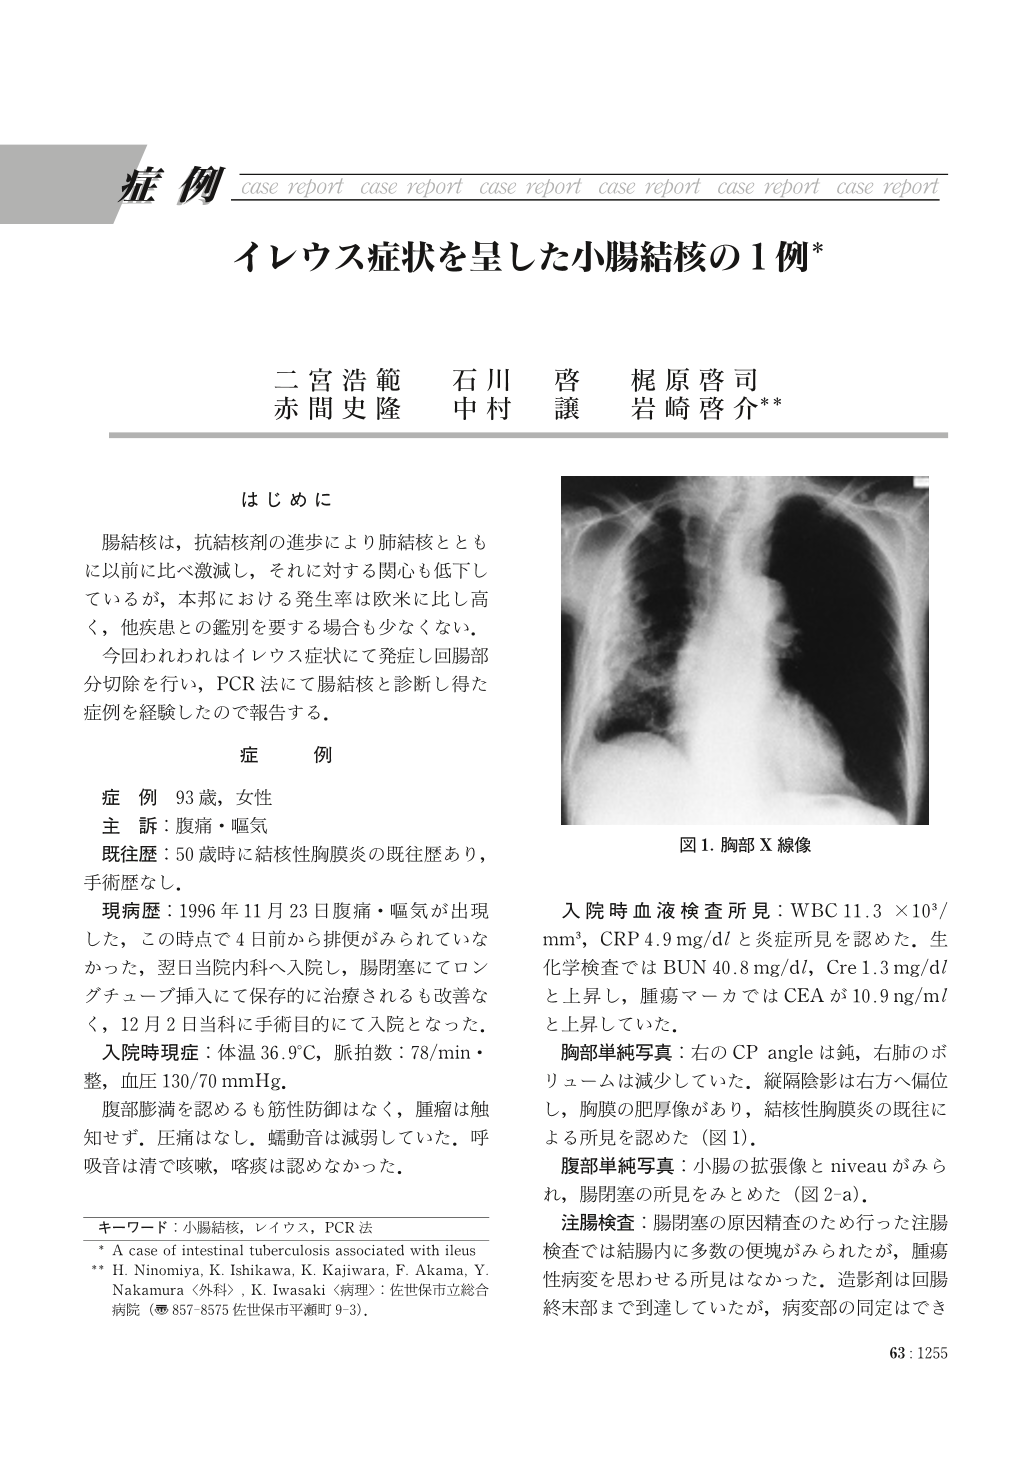 イレウス症状を呈した小腸結核の1例 臨床雑誌外科 63巻10号 医書 Jp